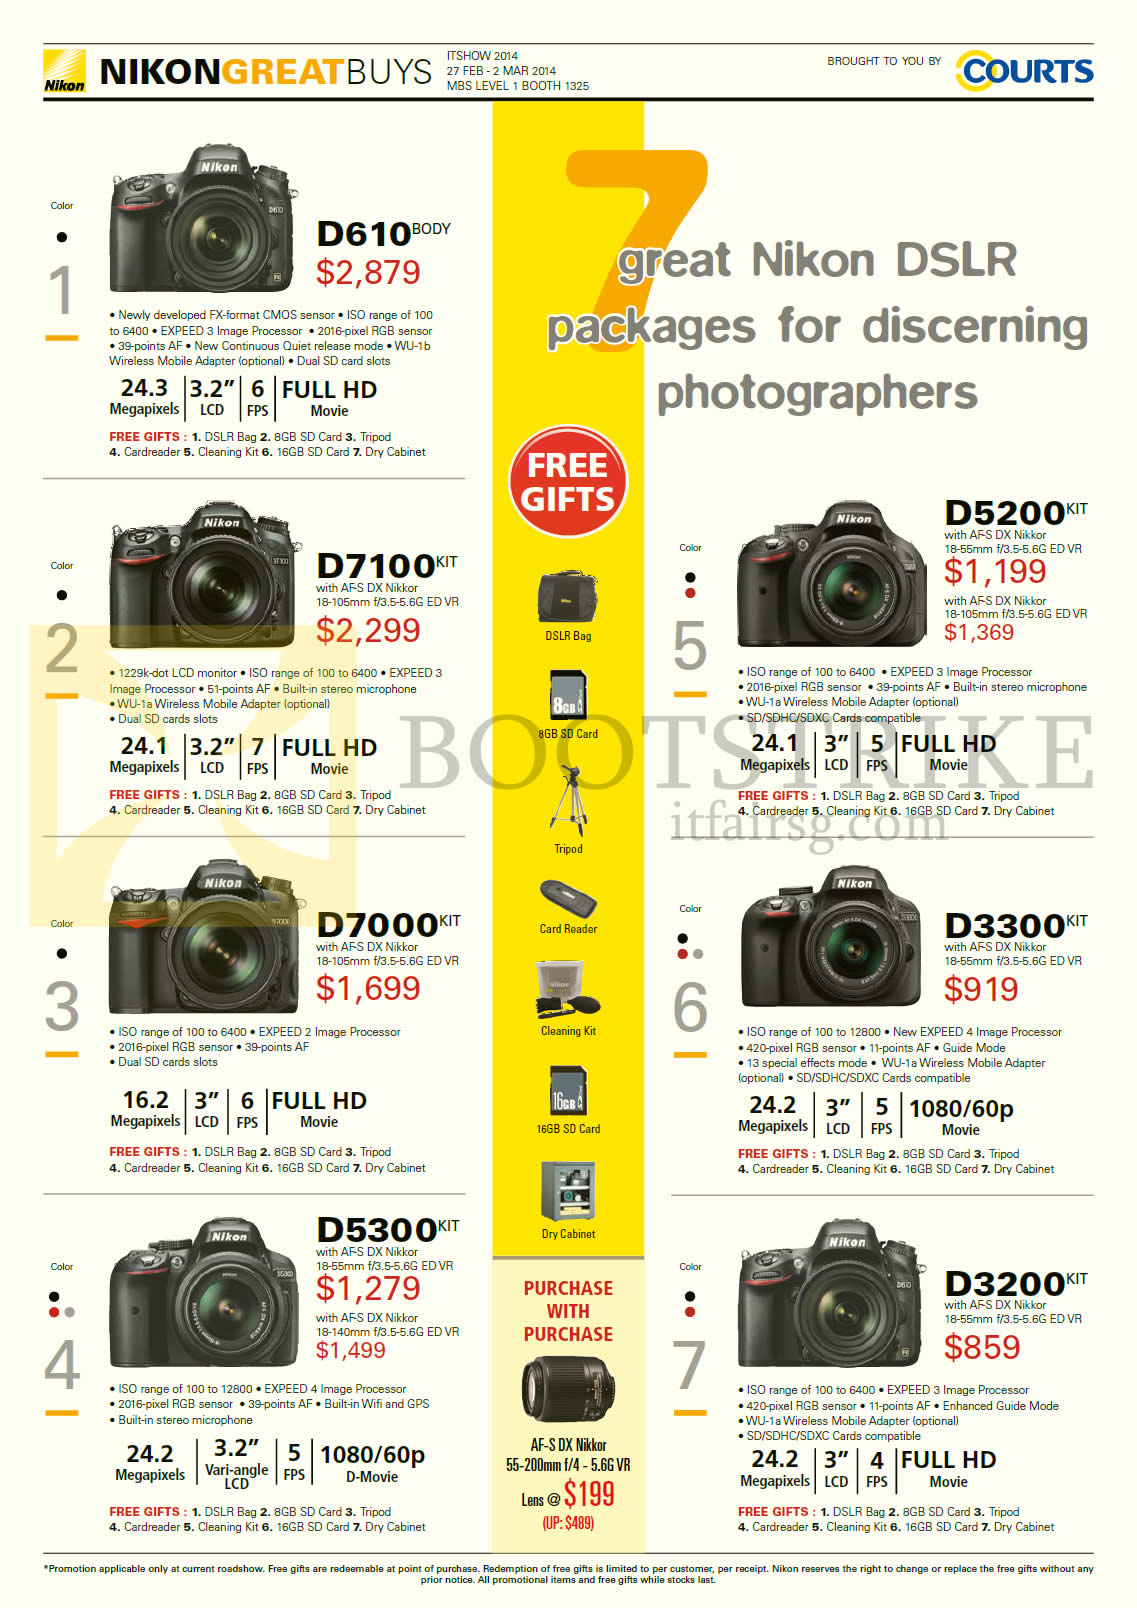 IT SHOW 2014 price list image brochure of Nikon Digital Cameras DSLR D610, D7100, D5200, D7000, D3300, D5300, D3200